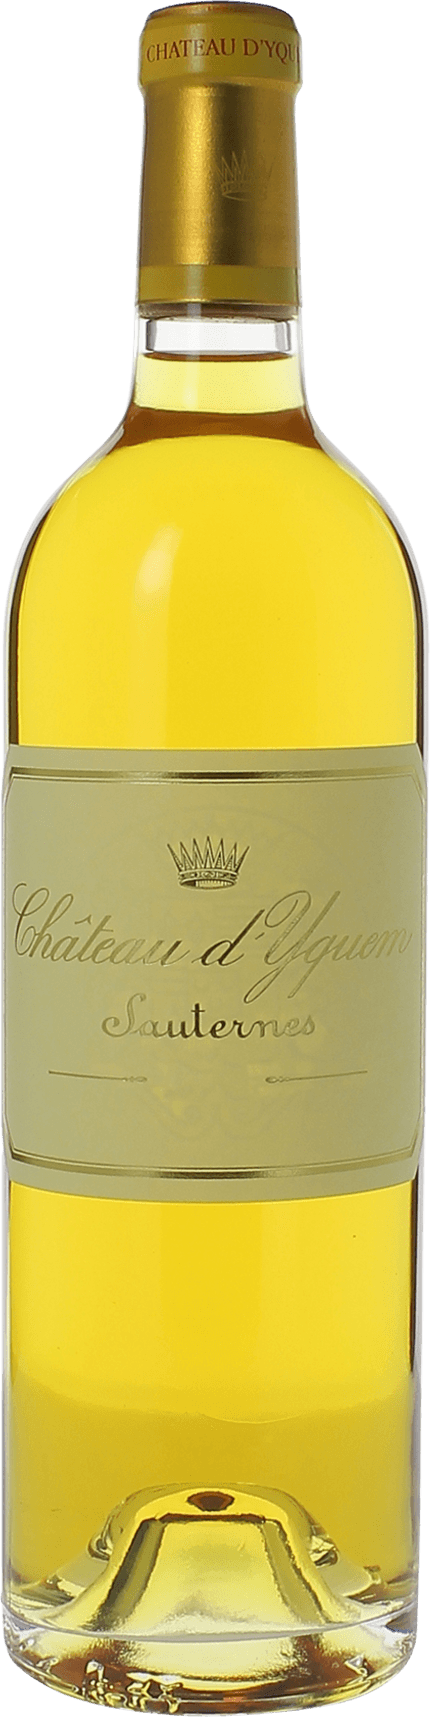 Yquem 1969 1er Grand cru class Sauternes, Bordeaux blanc